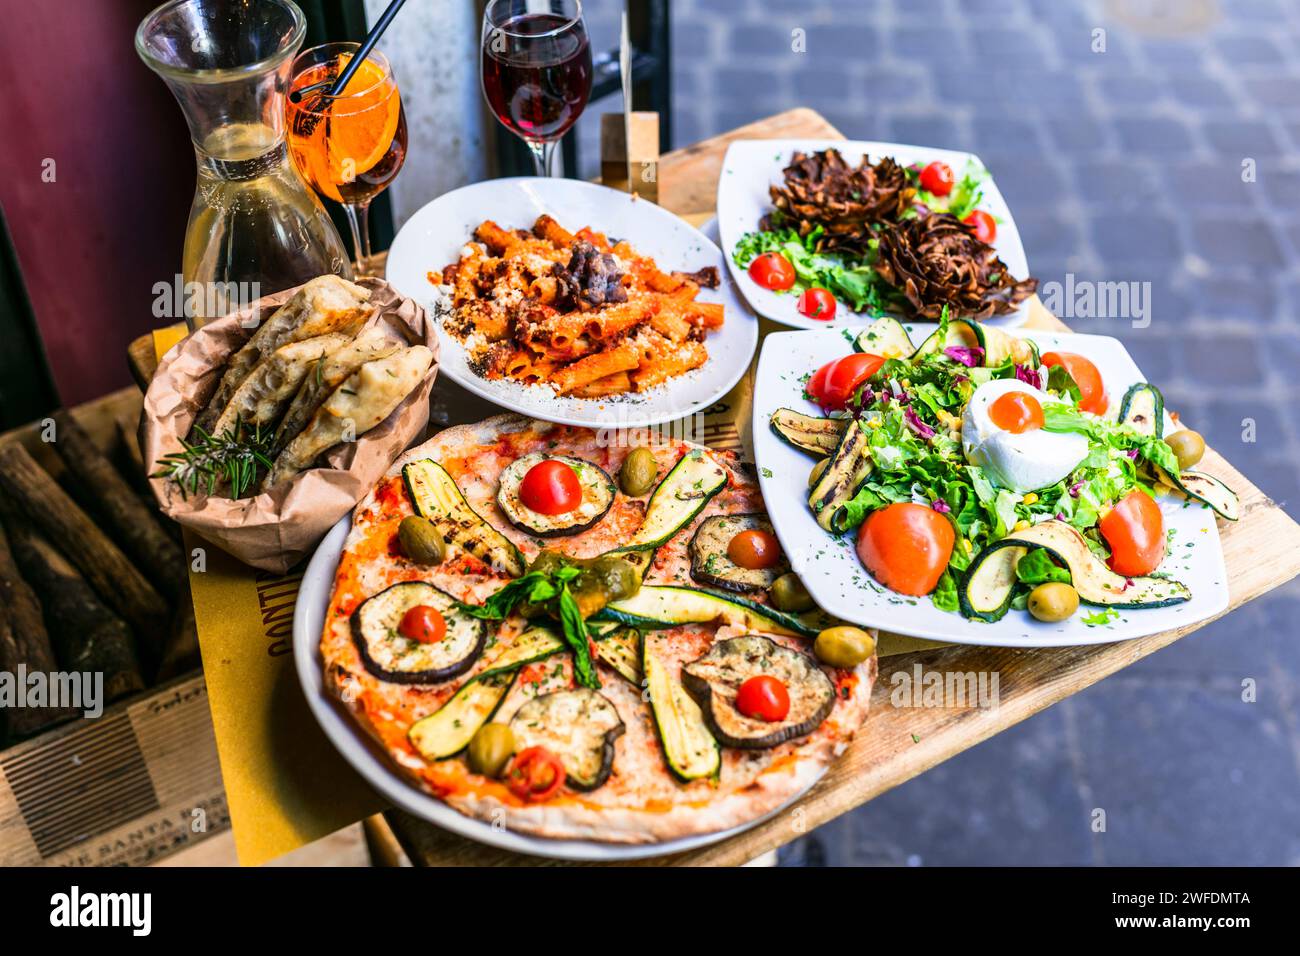 Voyage en Italie, partie de la culture italienne - cuisine italienne méditerranéenne saine. Restaurants de la rue Rome avec une variété de pâtes typiques, pizzas et salades Banque D'Images